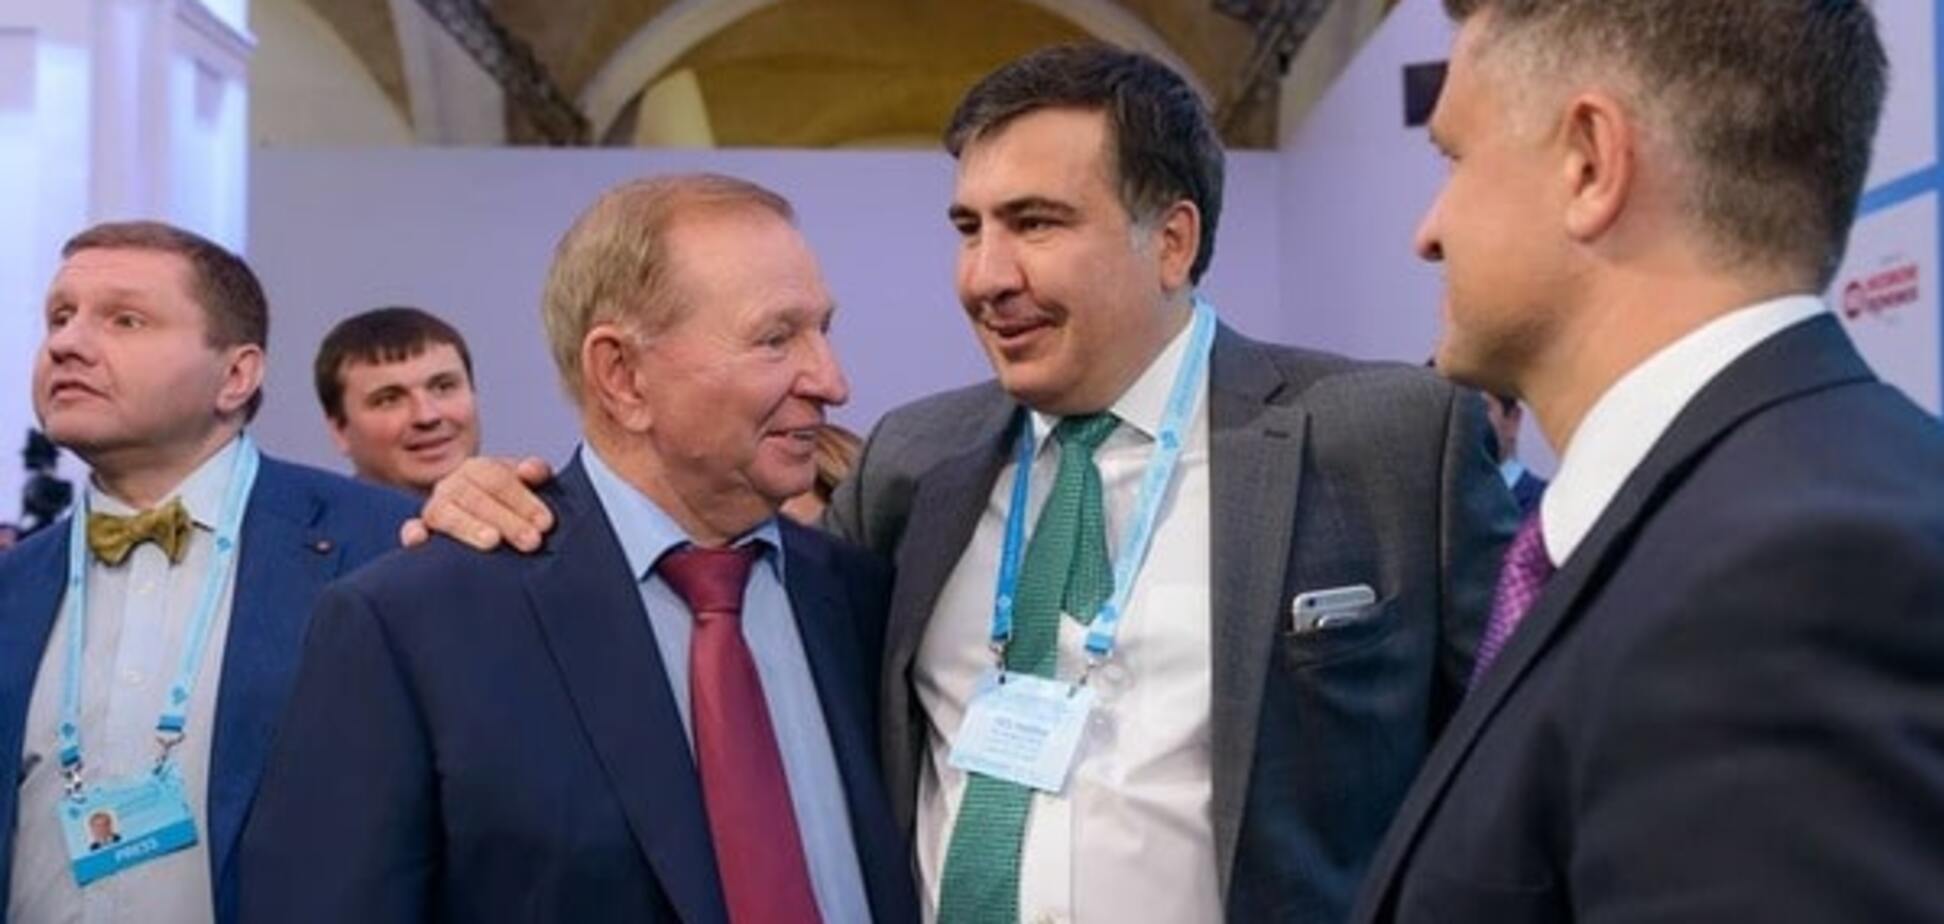 Боротьба з корупцією чи PR? Журналіст знайшов зв'язок Саакашвілі з мільярдером Пінчуком